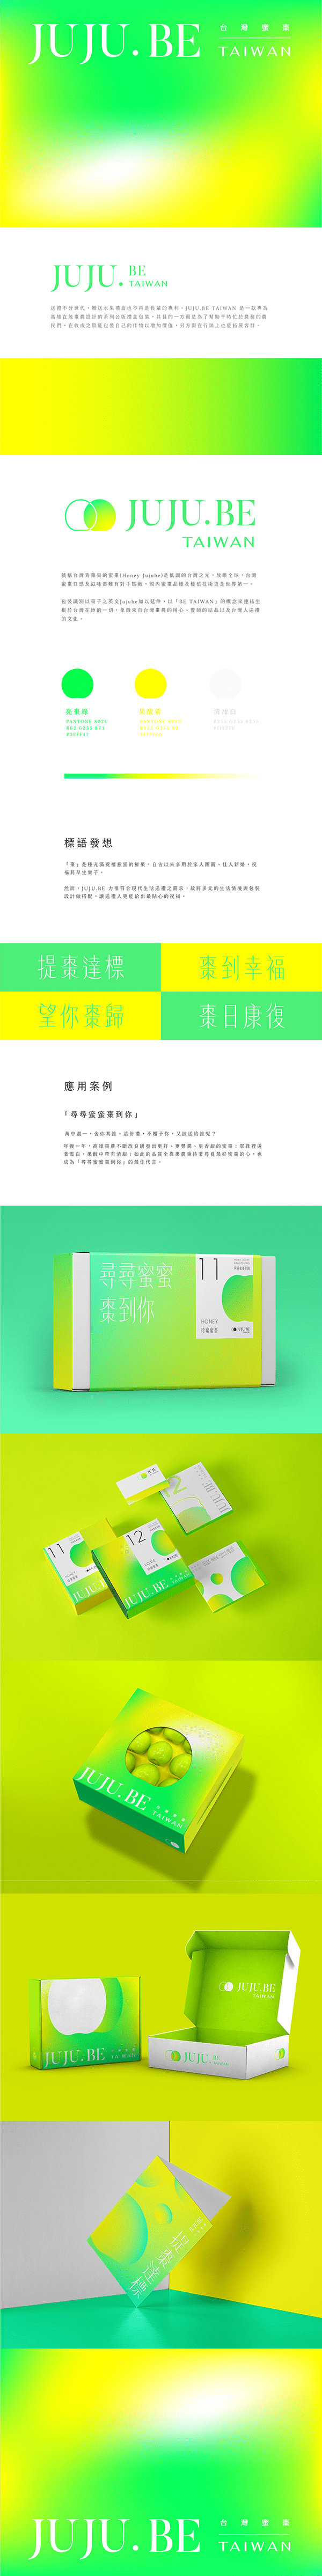 包裝設計＿JUJU.BE TAIWAN 台灣蜜棗禮盒